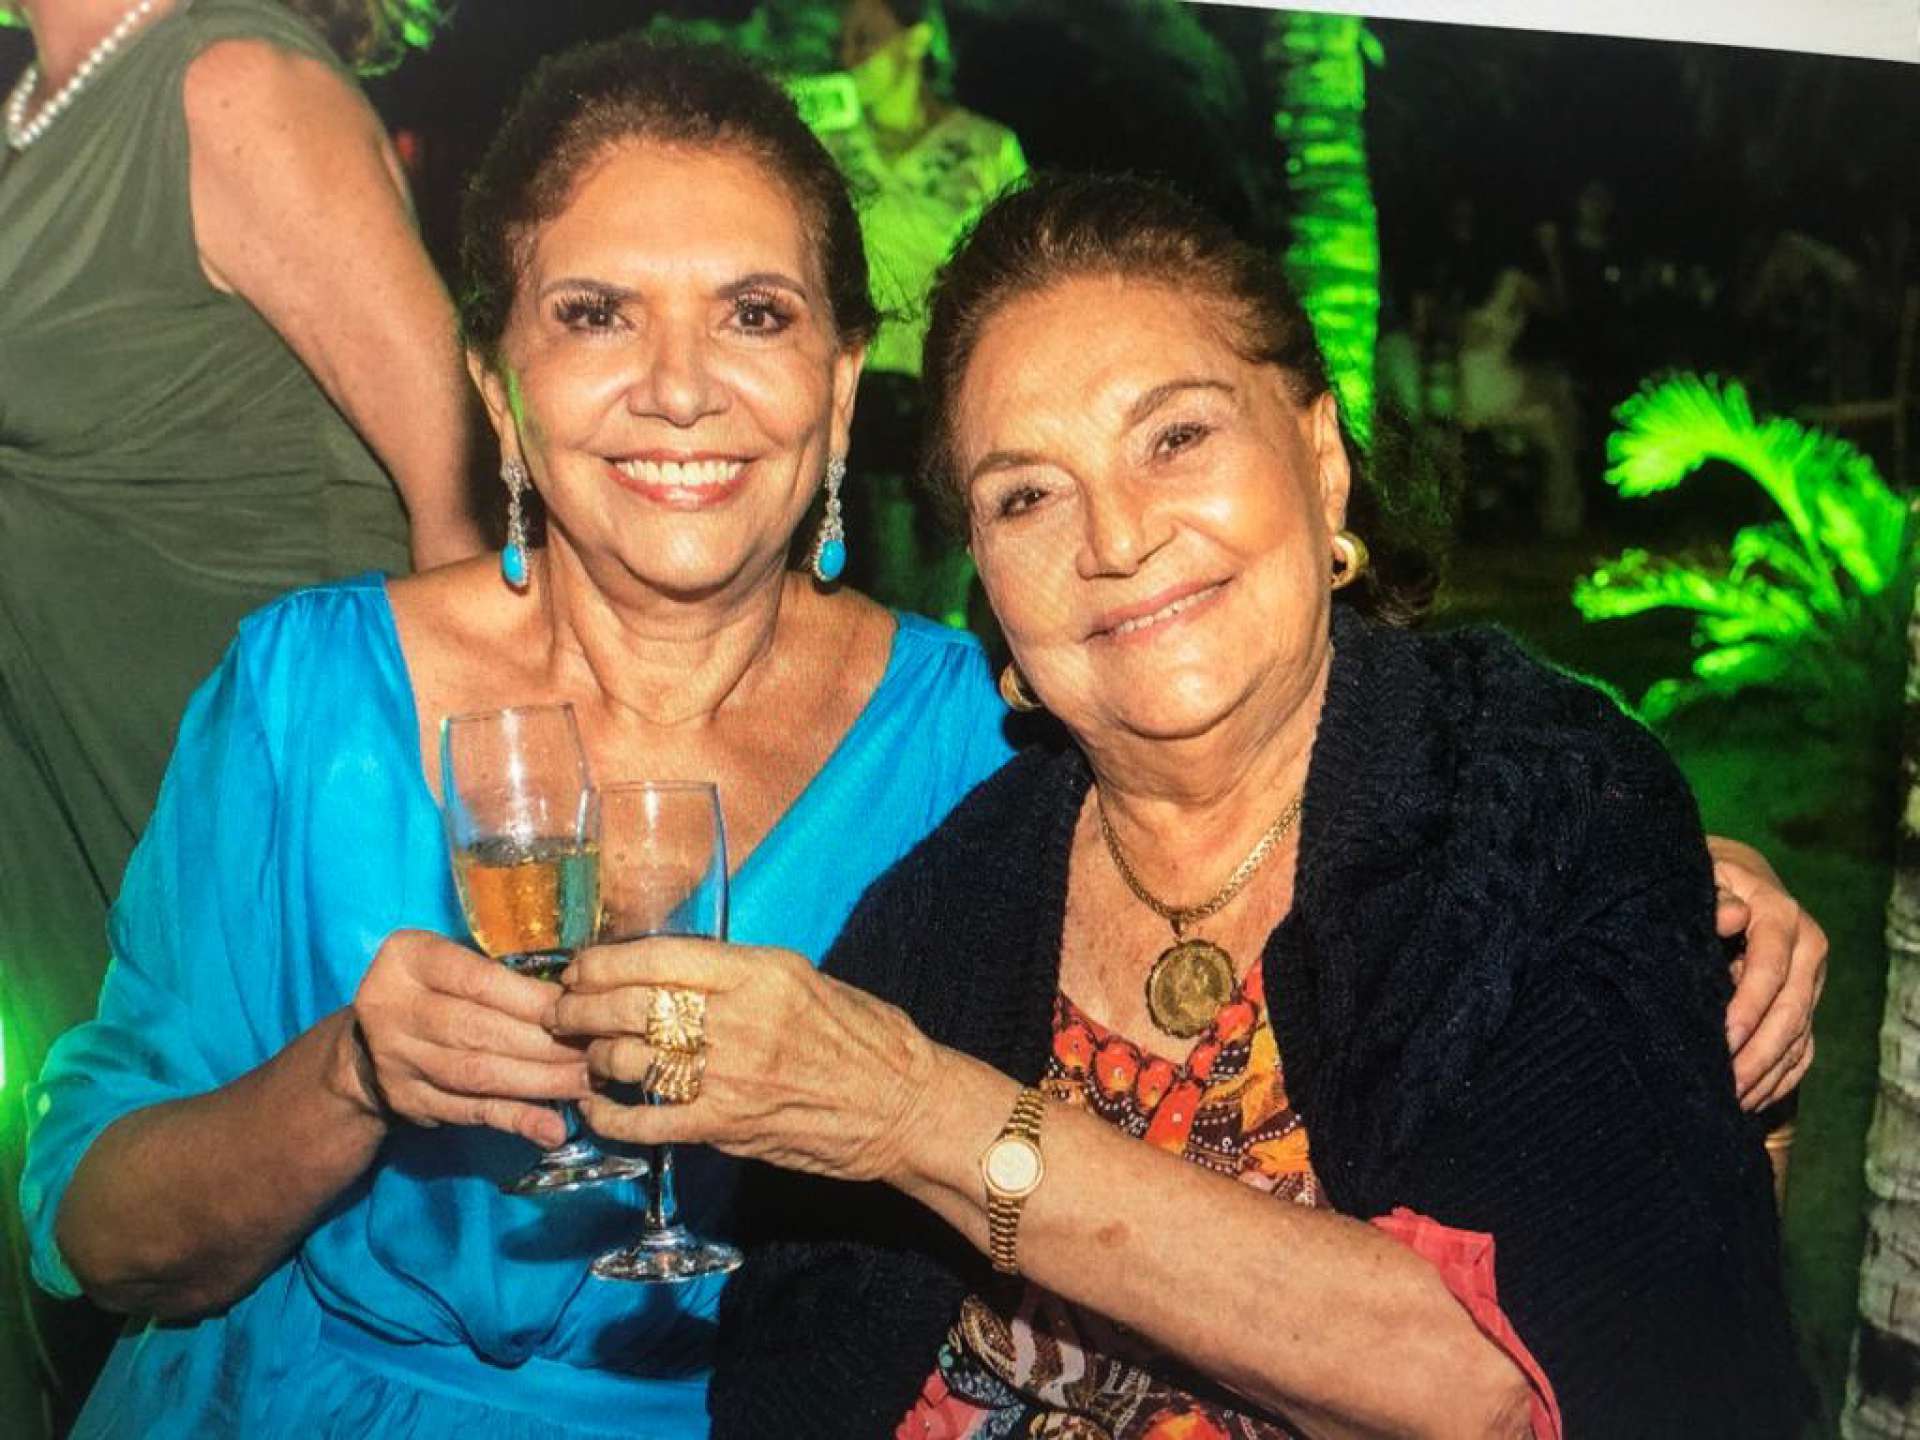 Matriarca Aunésia Aires de Moura completou 95 jovens anos. Ana D’Áurea, a primeira filha (foto), produziu live com a família, emitindo mensagens para comemorar a aniversariante (Foto: divulgação)